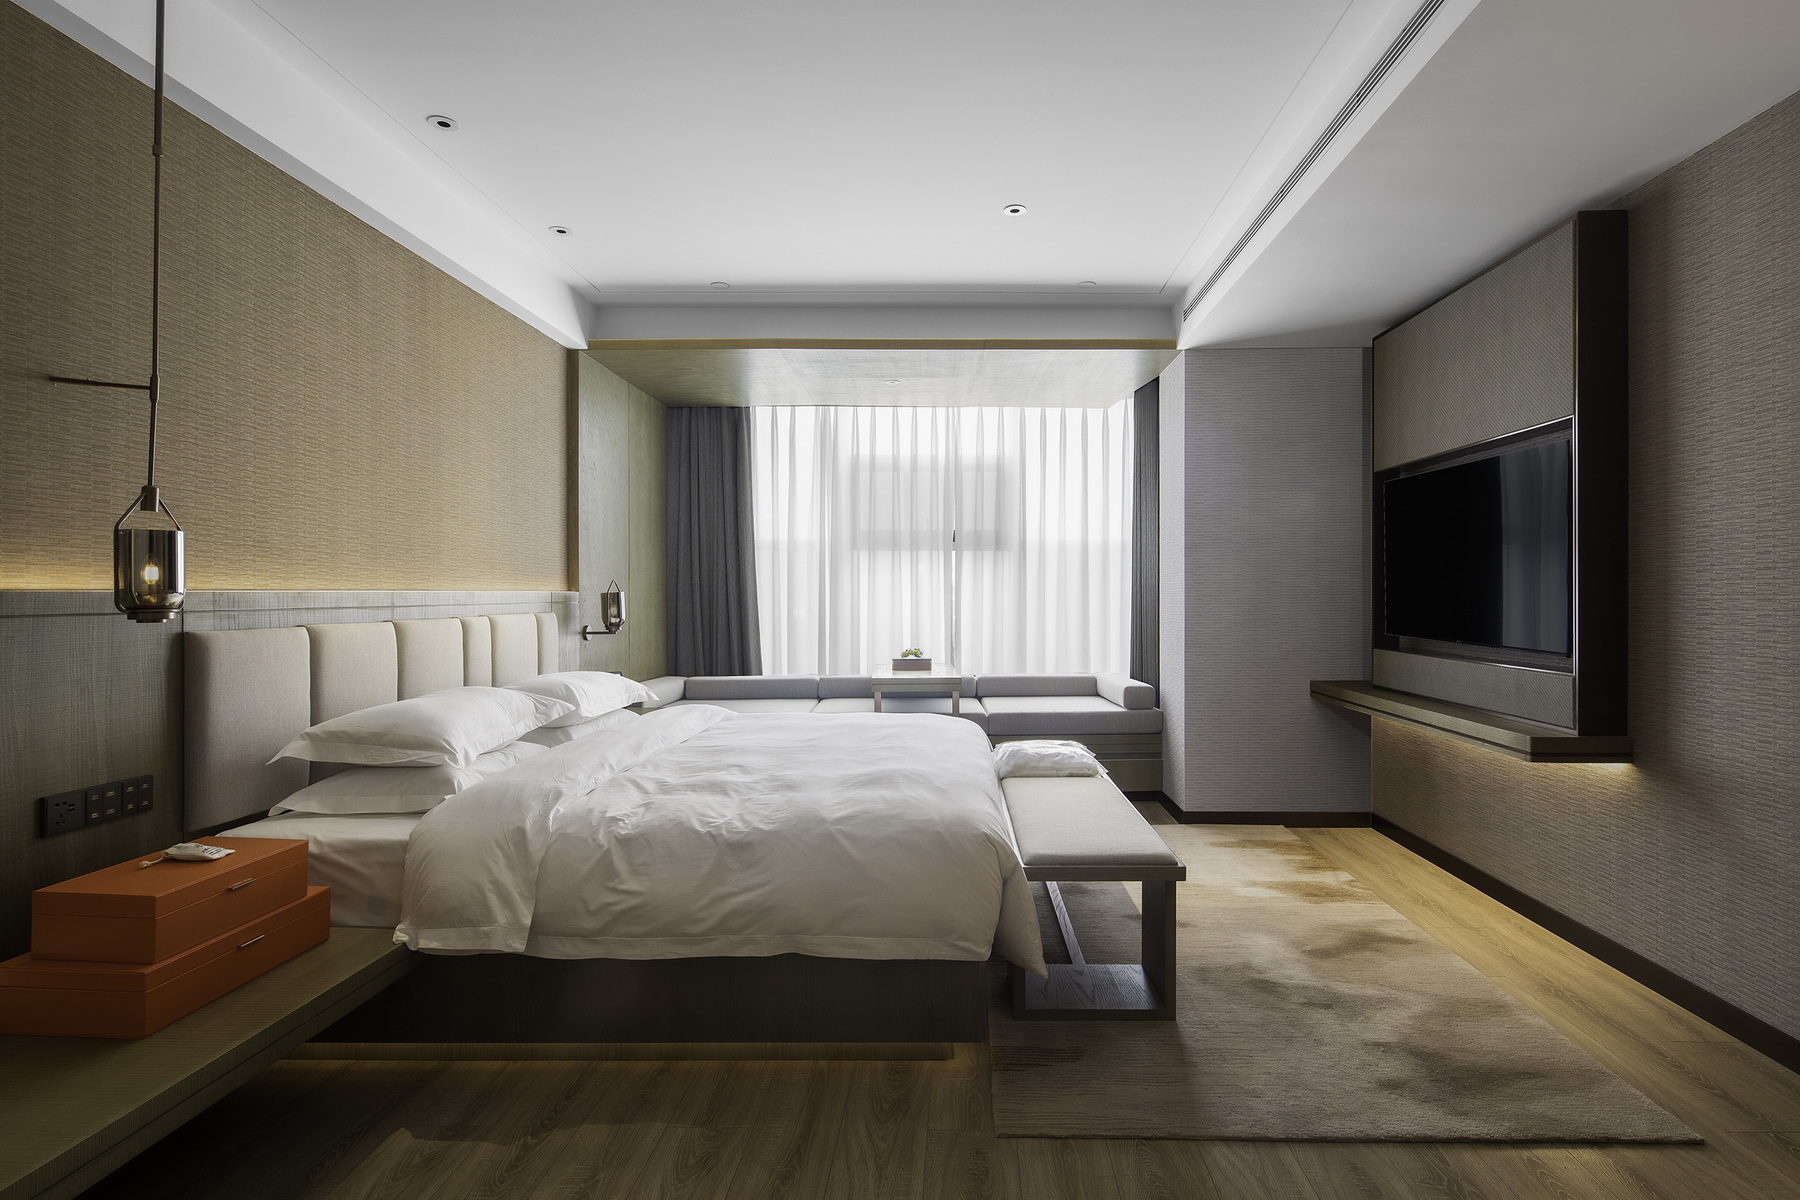 内蒙古 乌海蓝梦酒店 室内设计 / 北京非设计